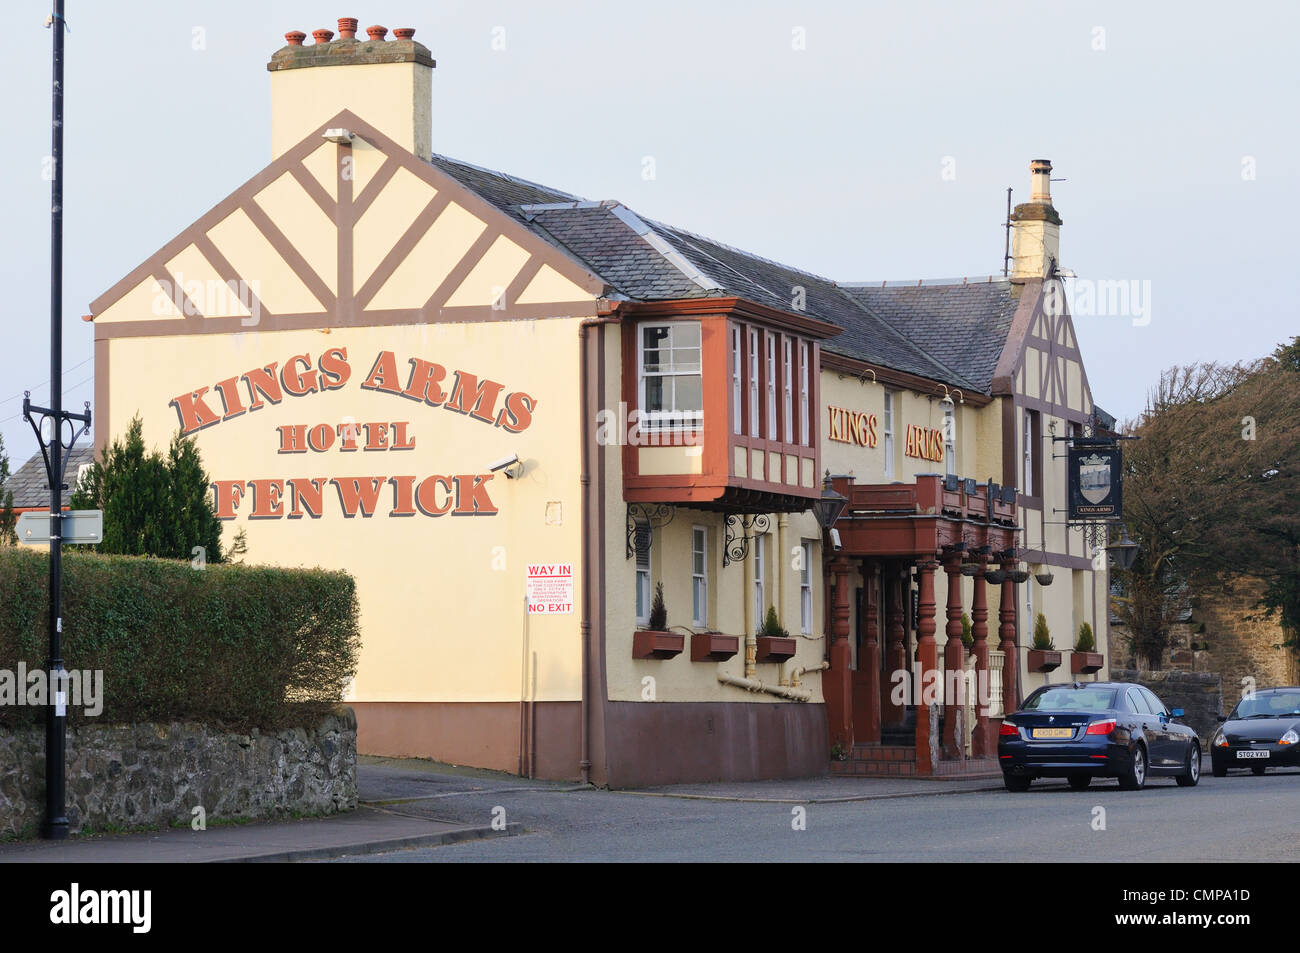 Buscando algo viejo Hotel Kings Arms en la aldea de Fenwick, East Ayrshire, Escocia Foto de stock